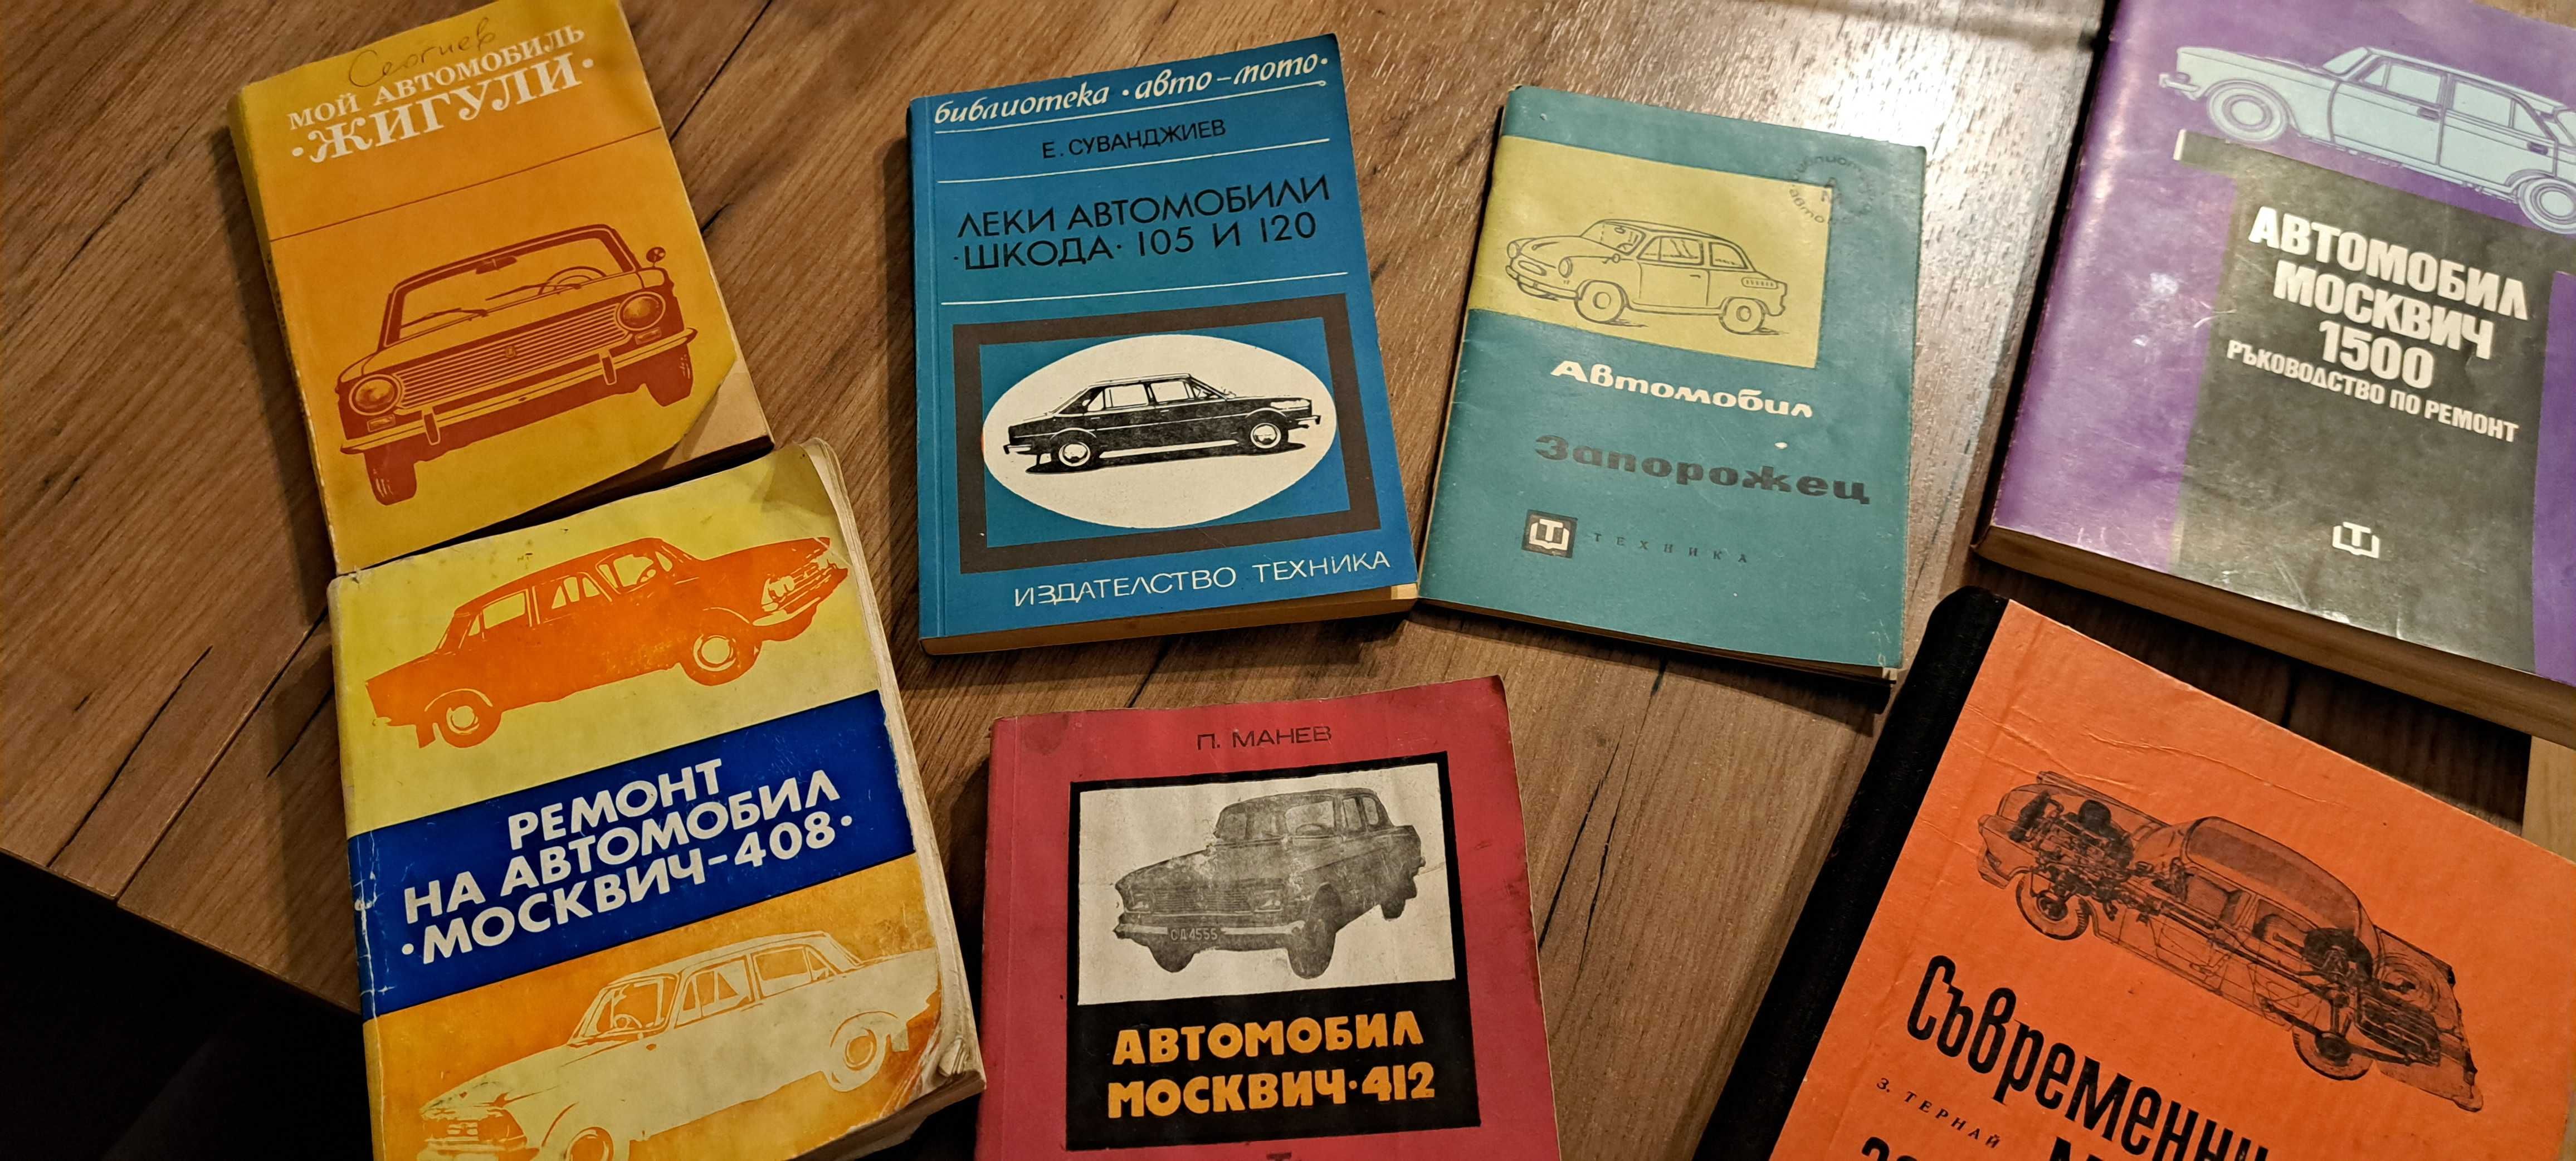 Книги за Шкода 105 и 120, Запорожец, Москов 412 и 408, Жигули